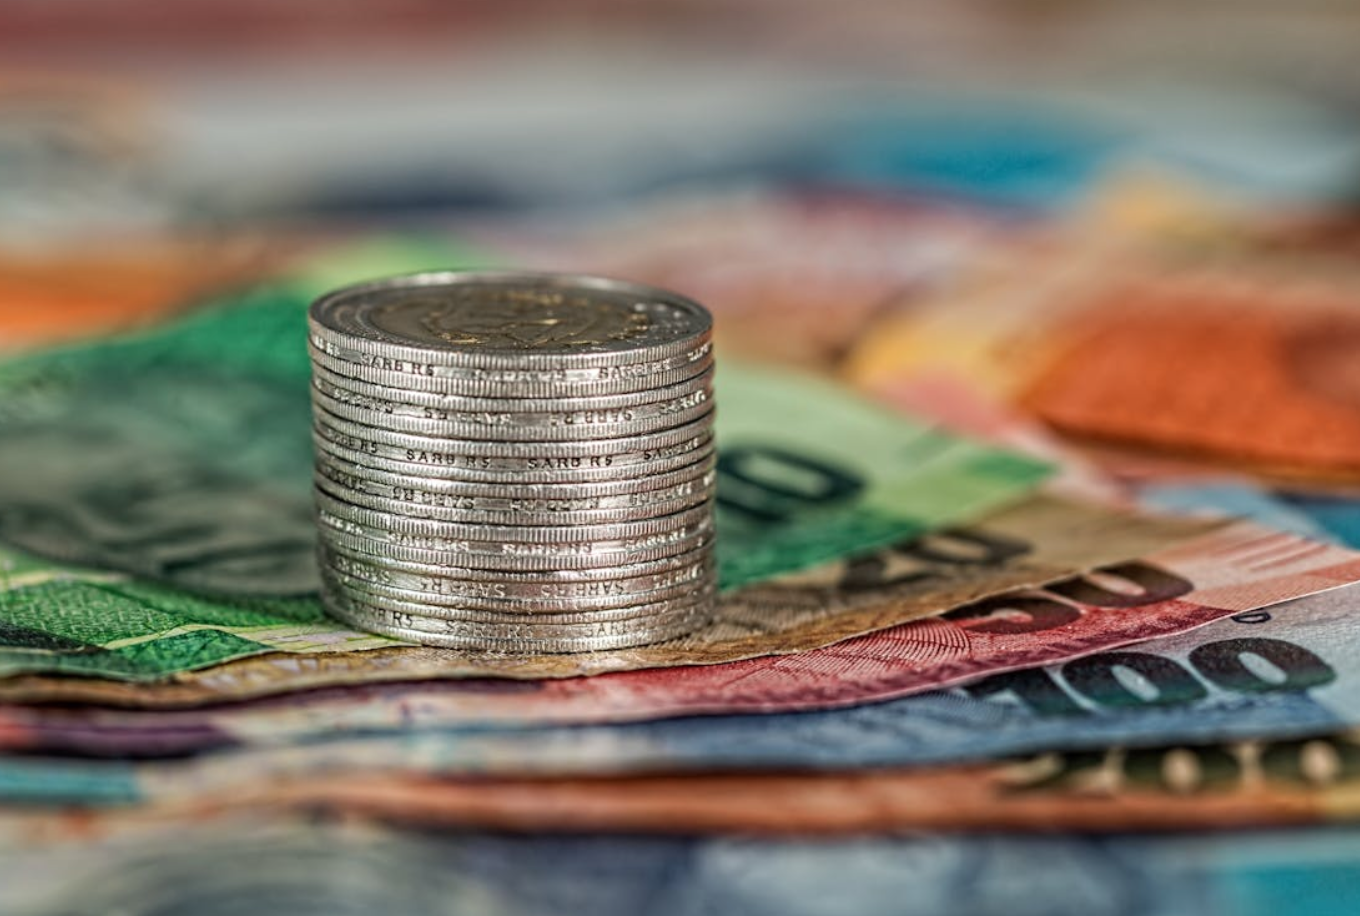 Assorted paper money and coins; image by Pixabay.com, via Pexels.com.